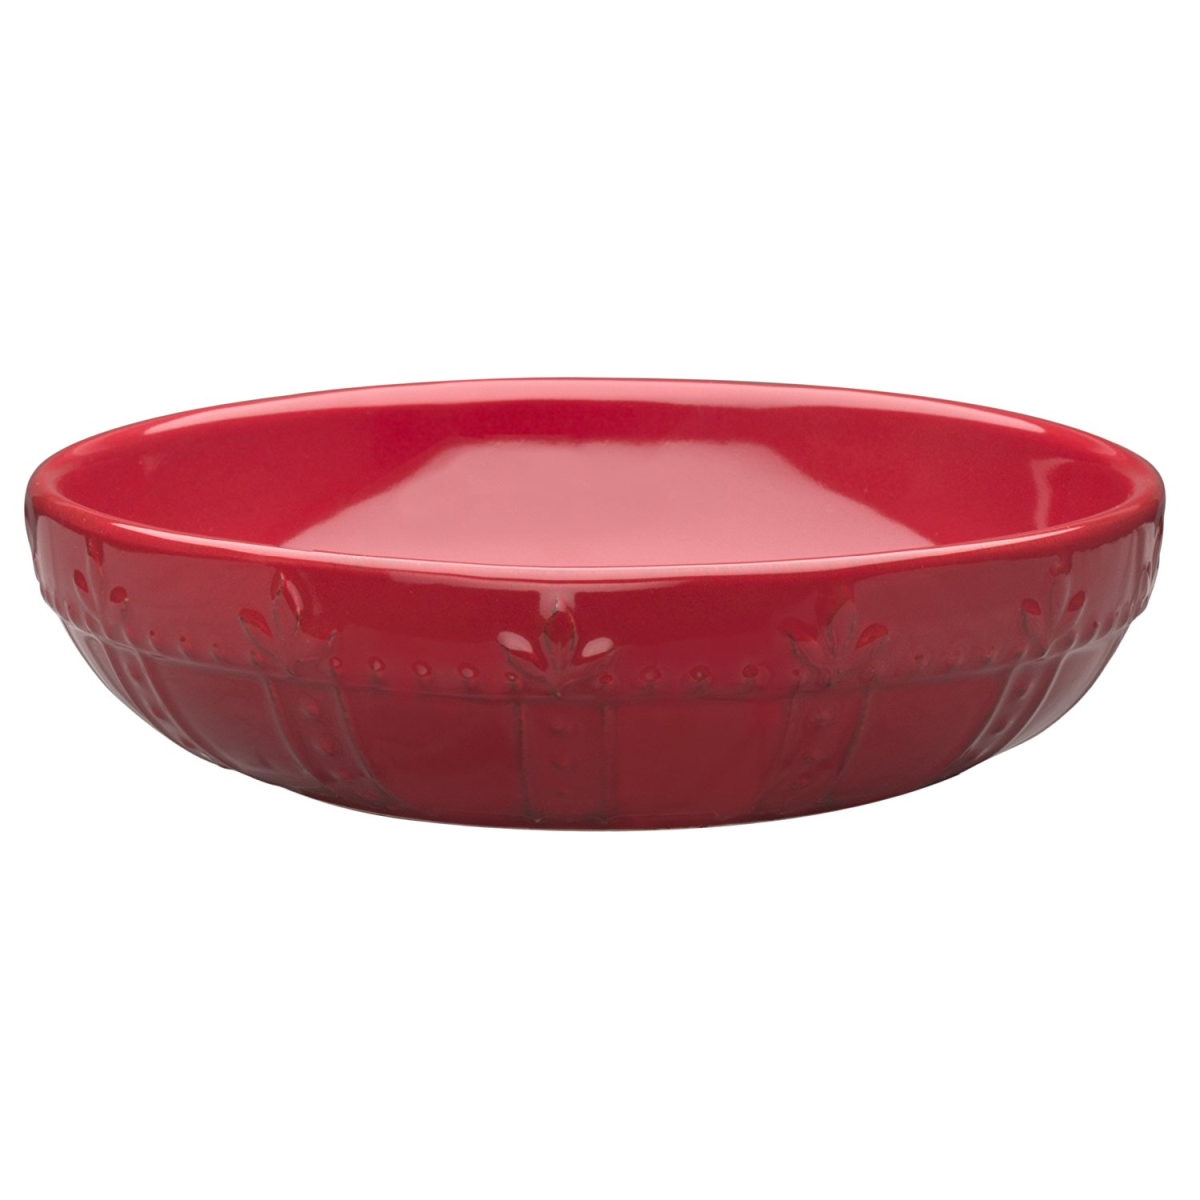 70776 Sorrento Ruby Individual Pasta Bowls, Set Of 4